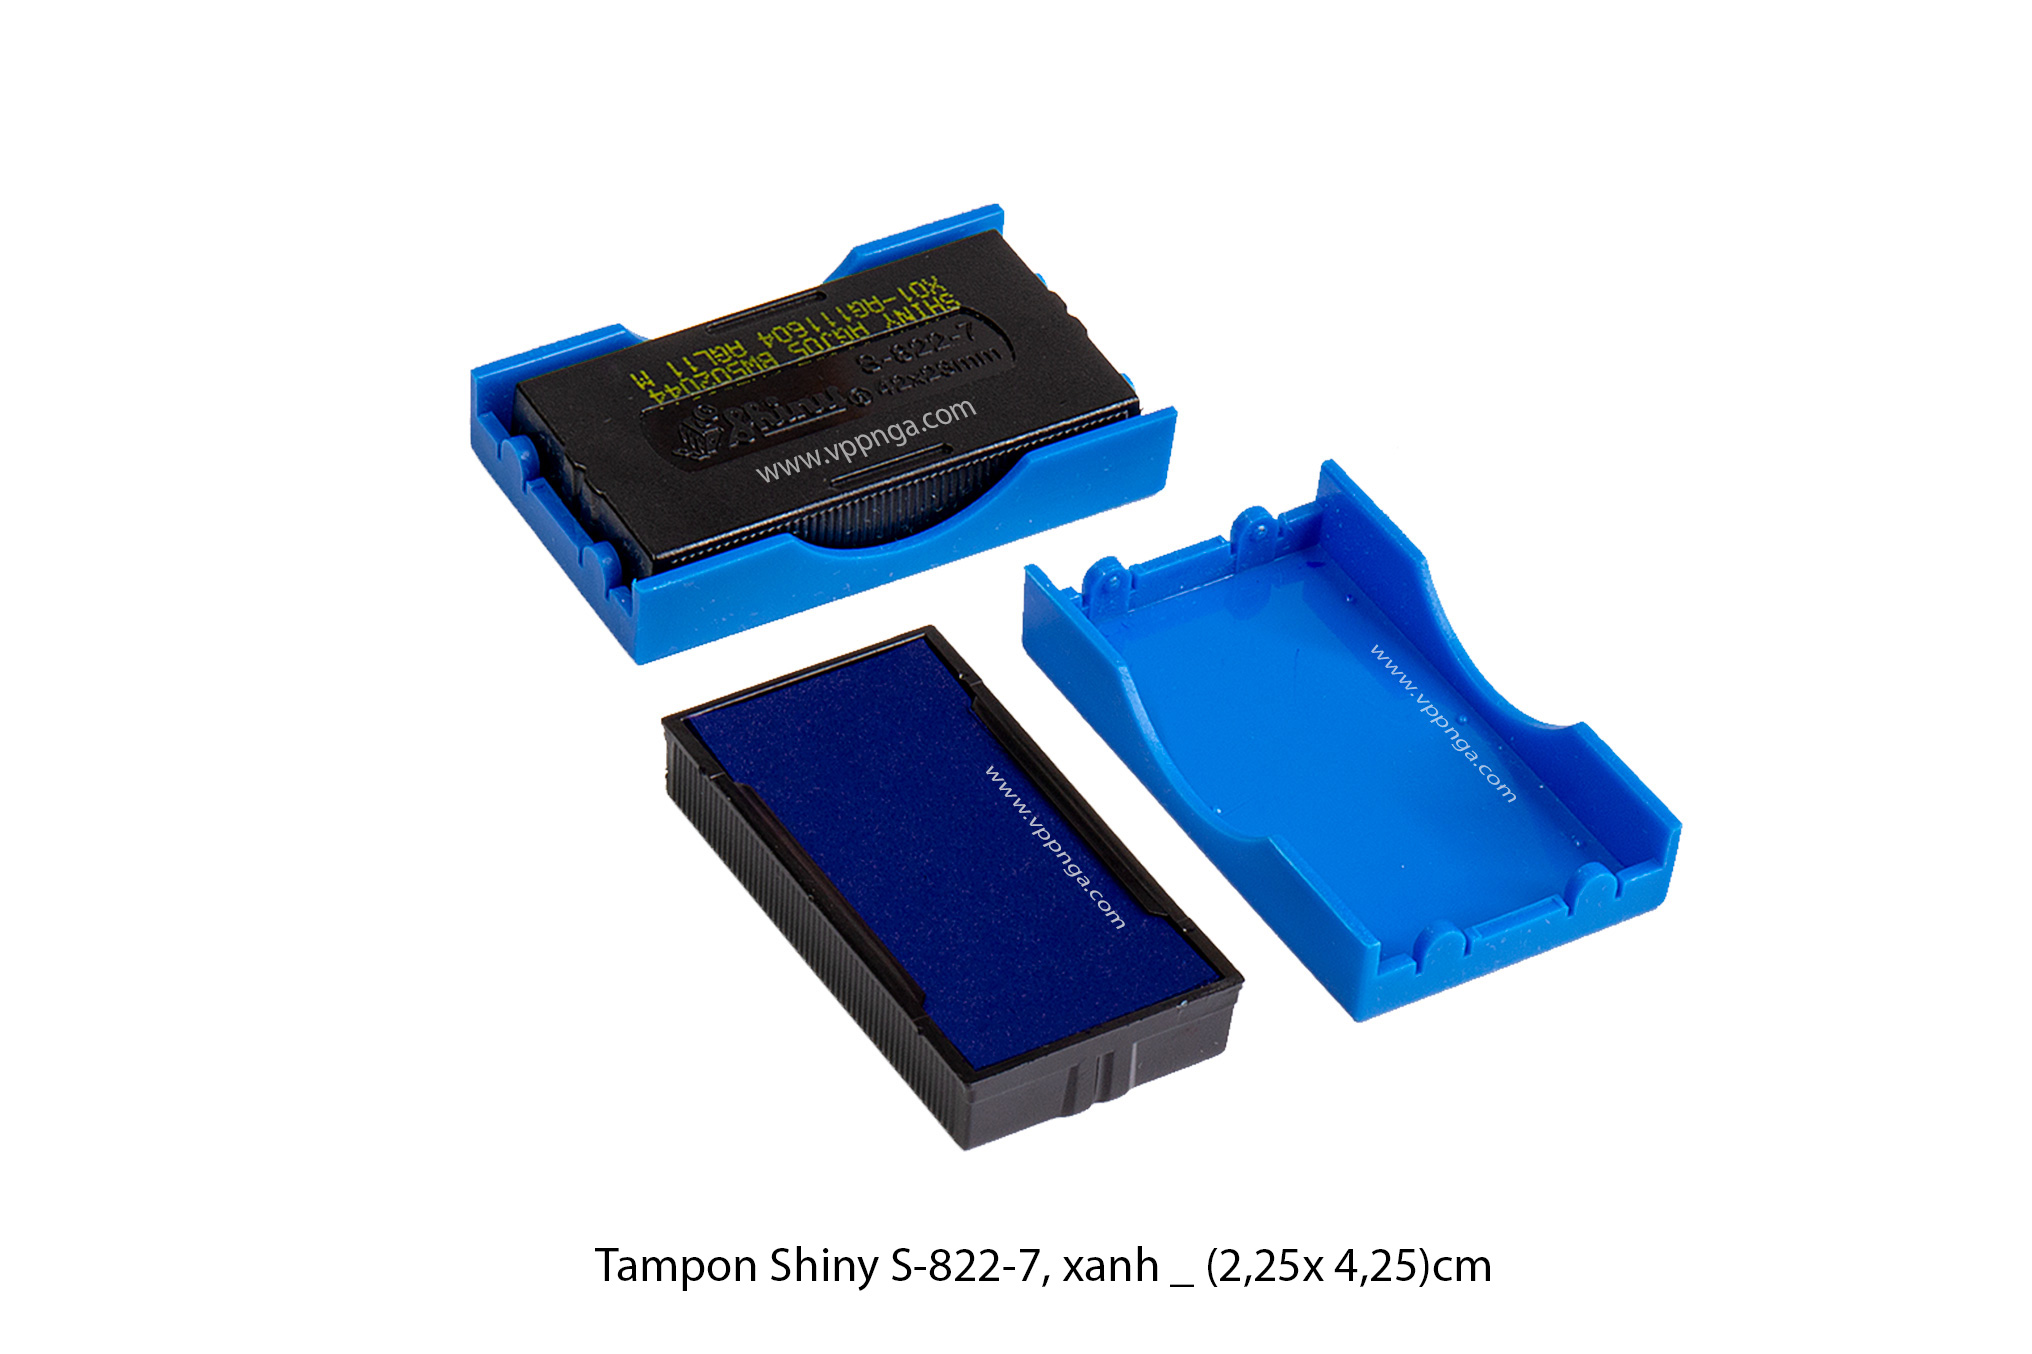 Tampon Shiny S822 - 7 Xanh